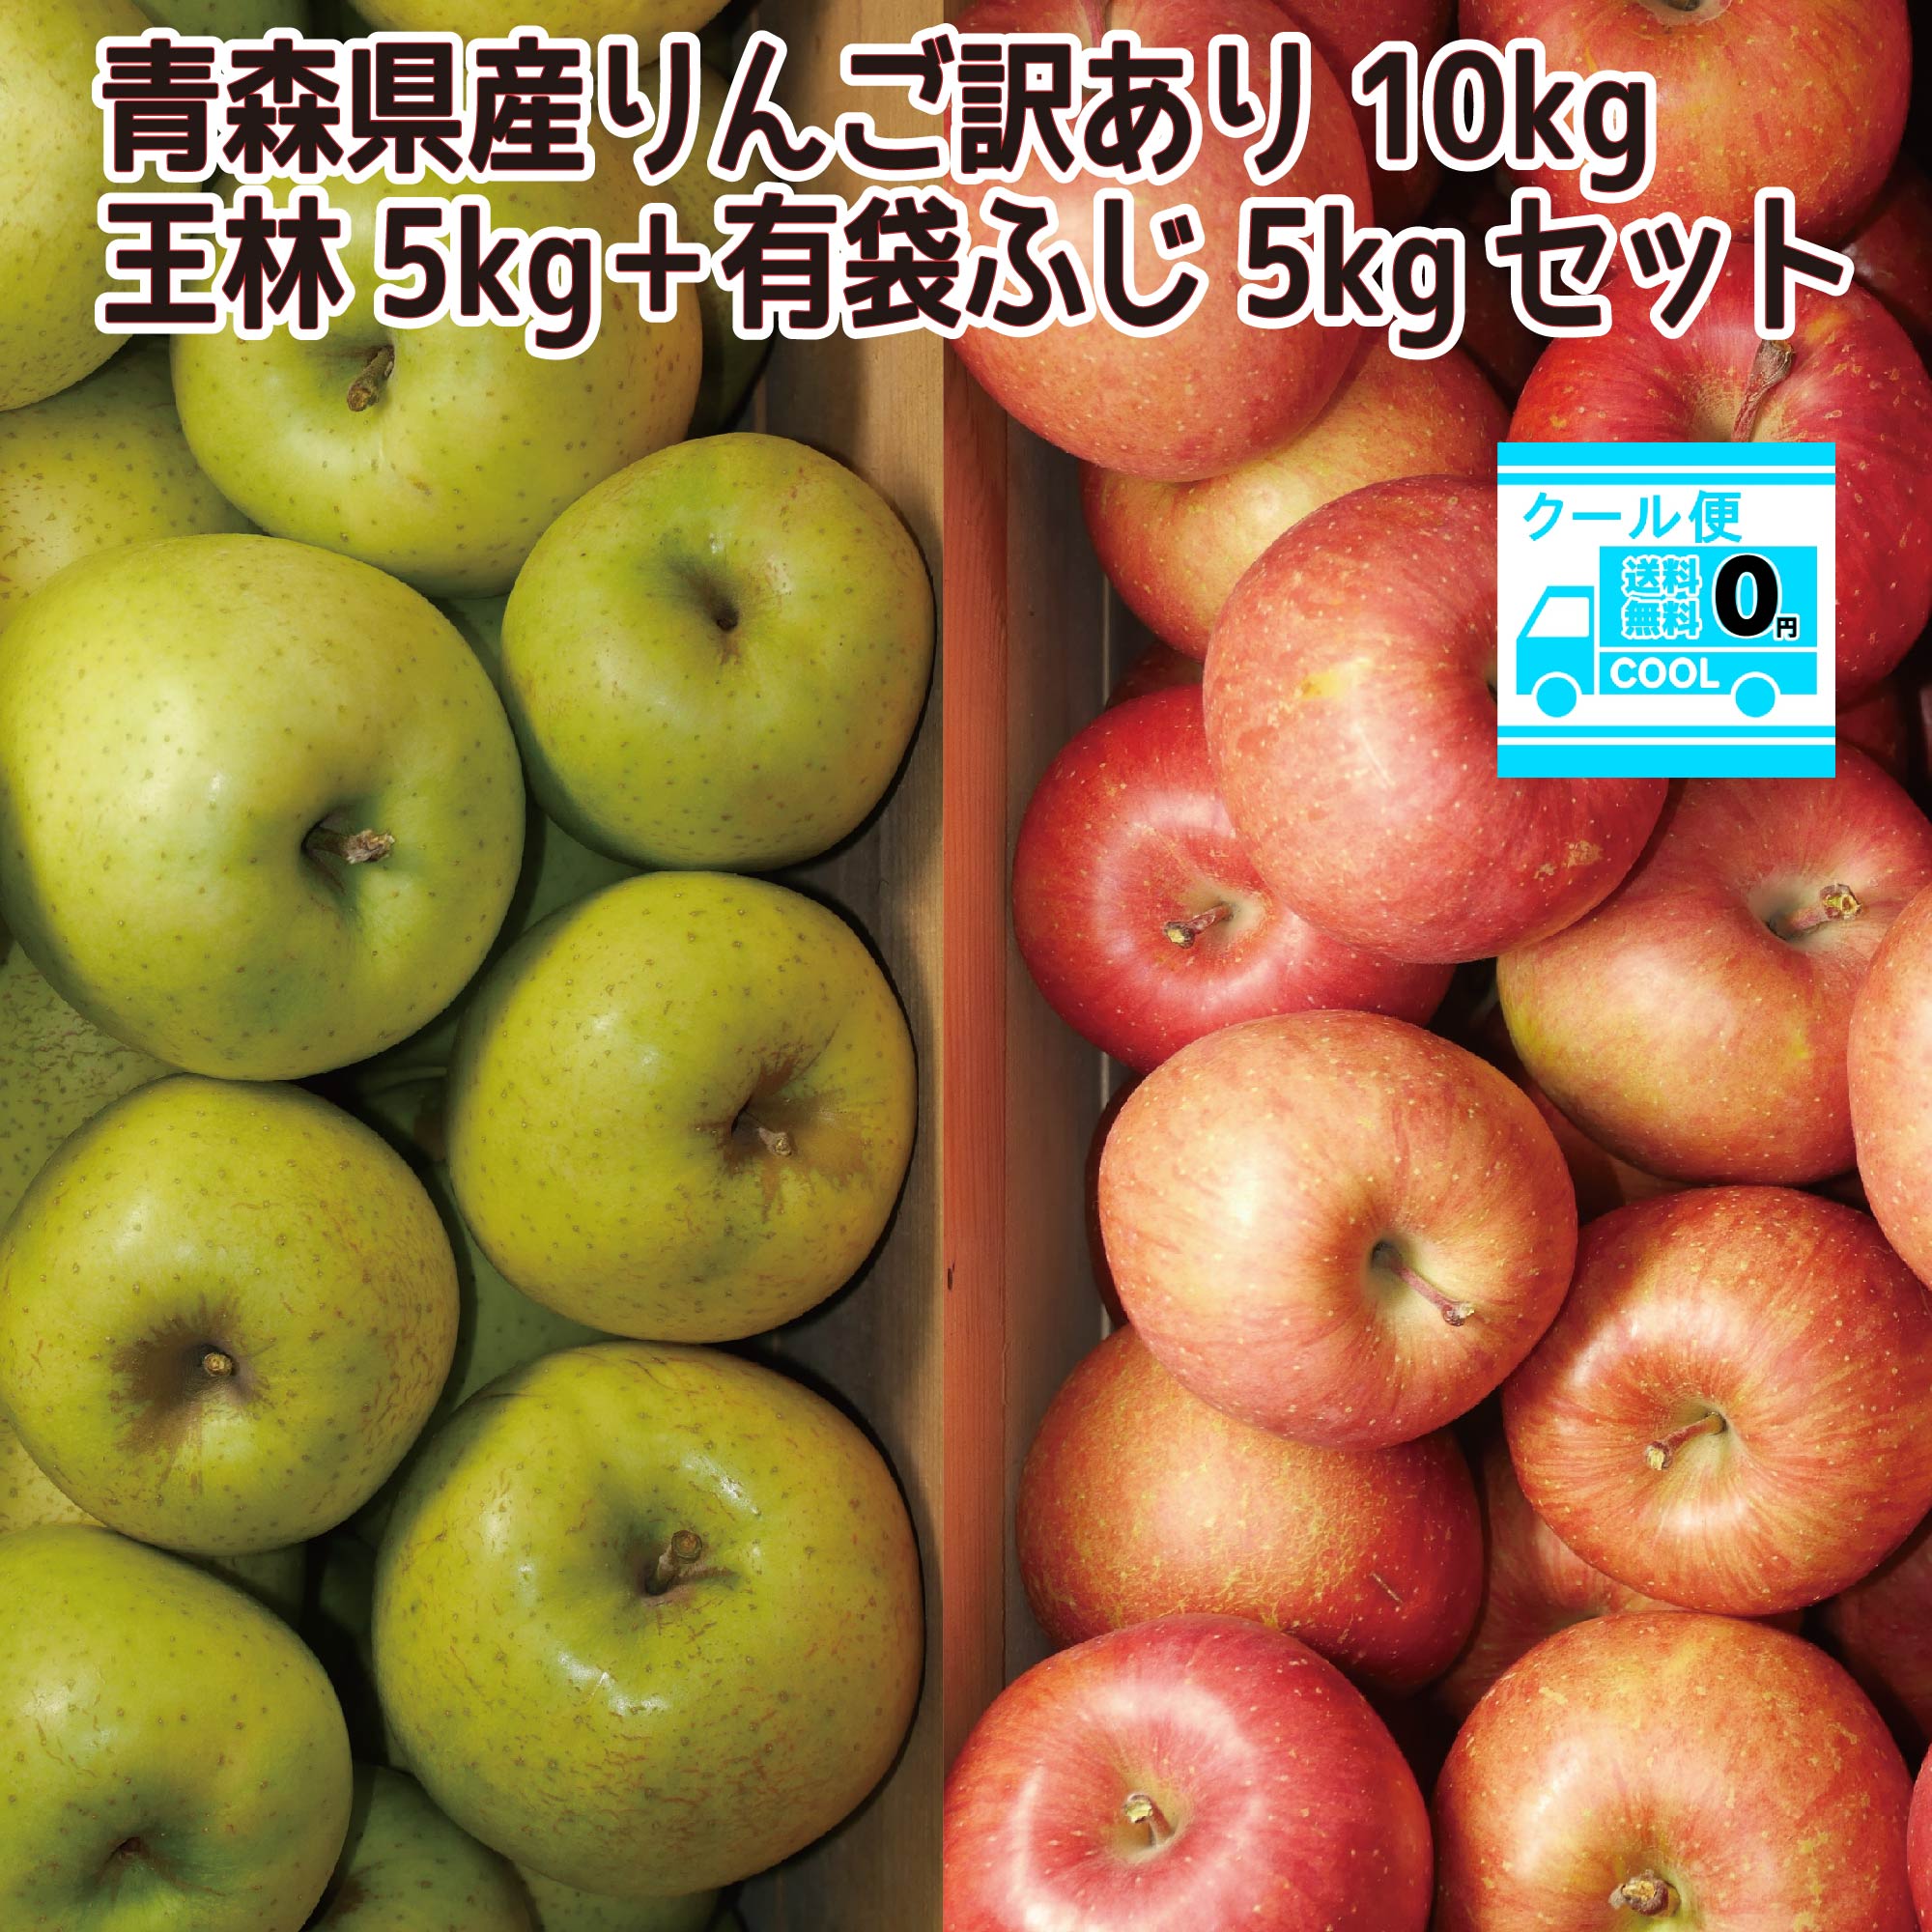 クール便込み 青森県産 りんご10kgセット 王林5kg15-25玉程度 ふじ5kg15-25玉程度